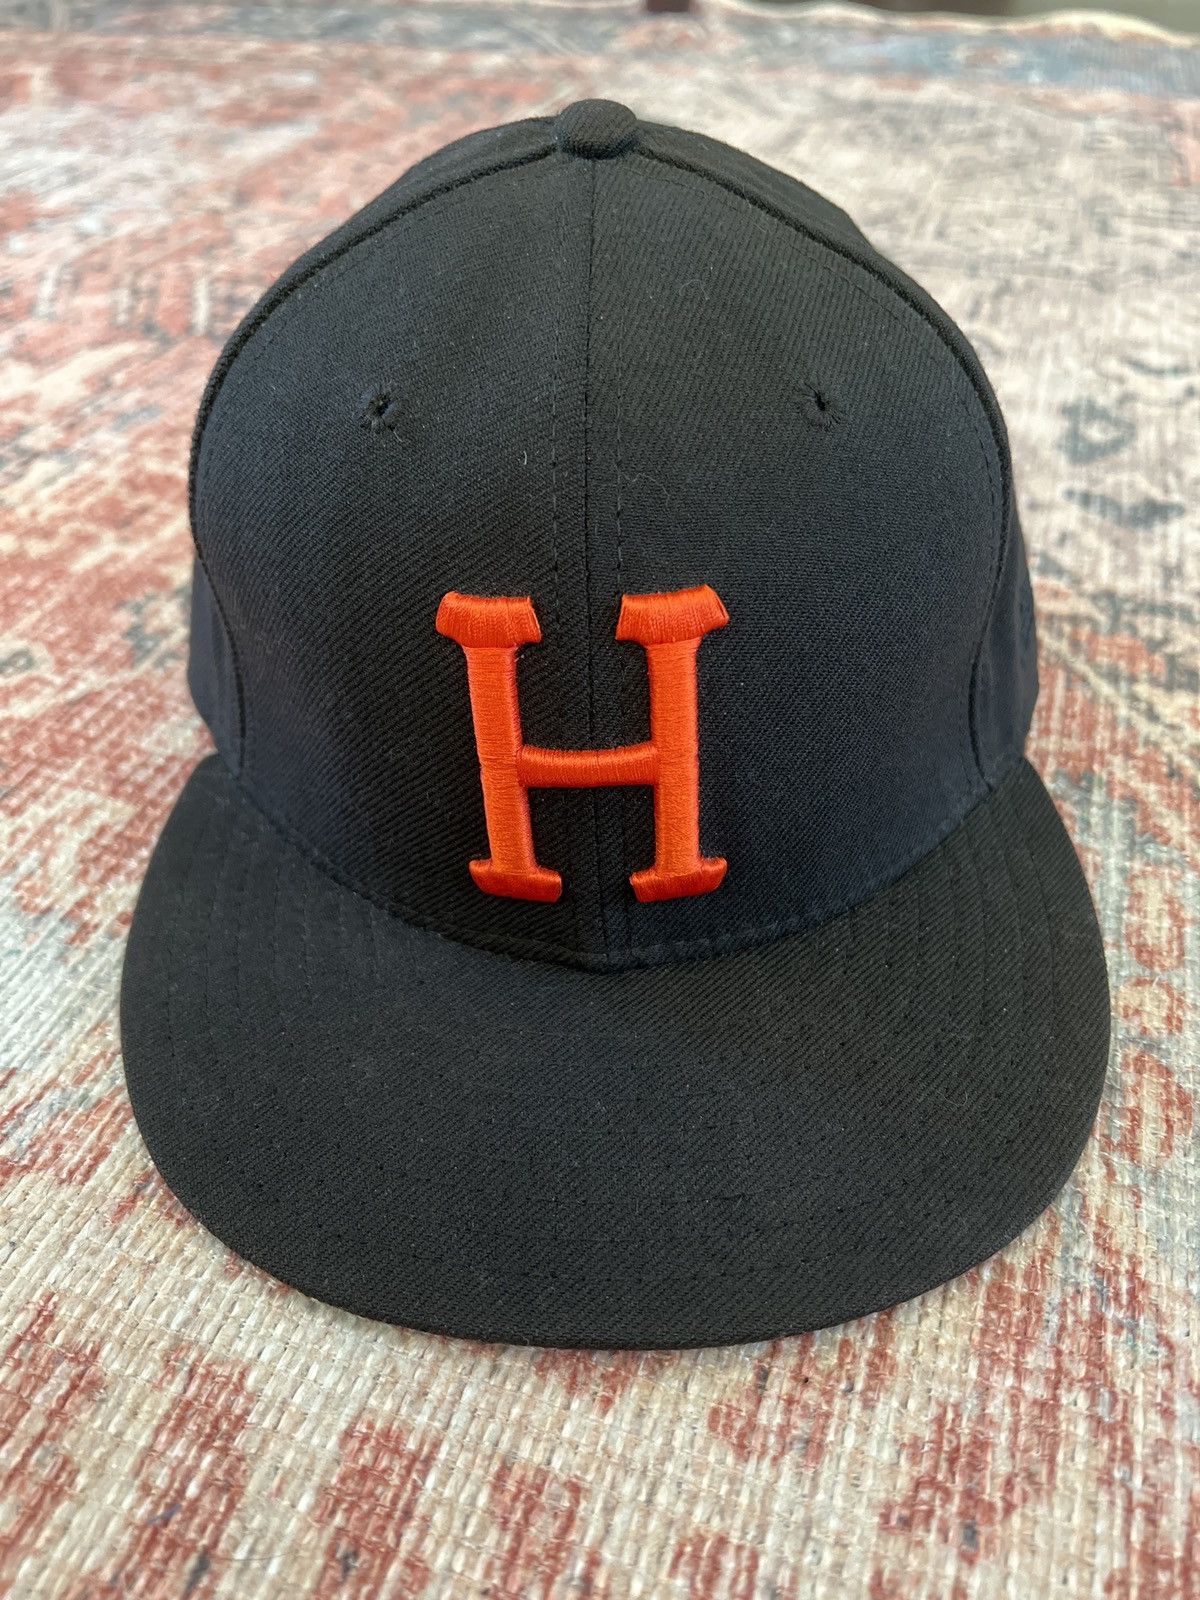 Huf OG Forever Low-Pro New Era Hat in Black - Size 7 3/8